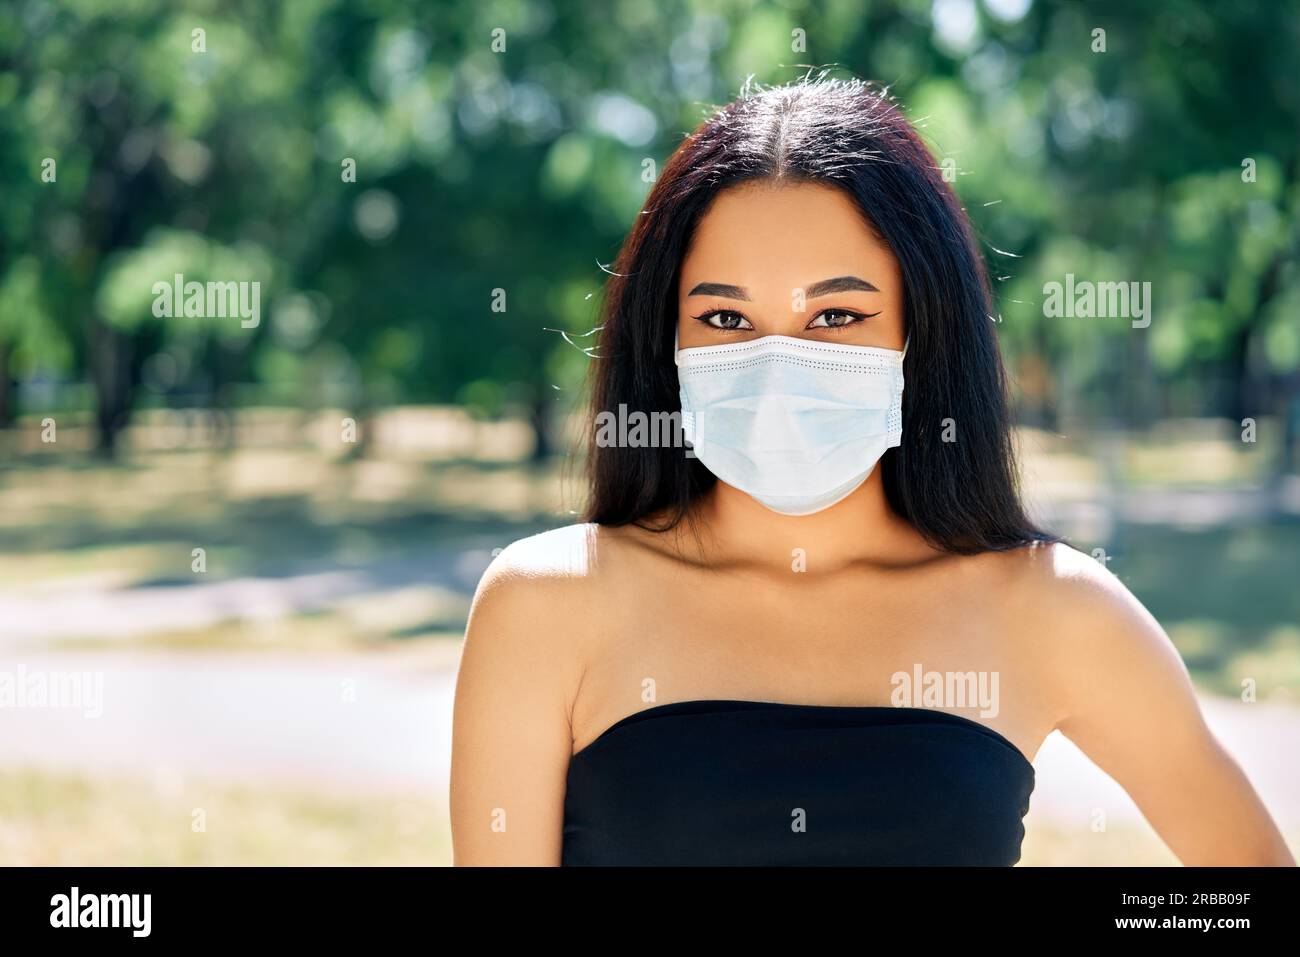 Nahaufnahme Porträt der afroamerikanischen Frau in Virenschutz Gesichtsmaske. Coronavirus COVID-19 Pandemie-Krankheit, Gesundheitskonzept Stockfoto